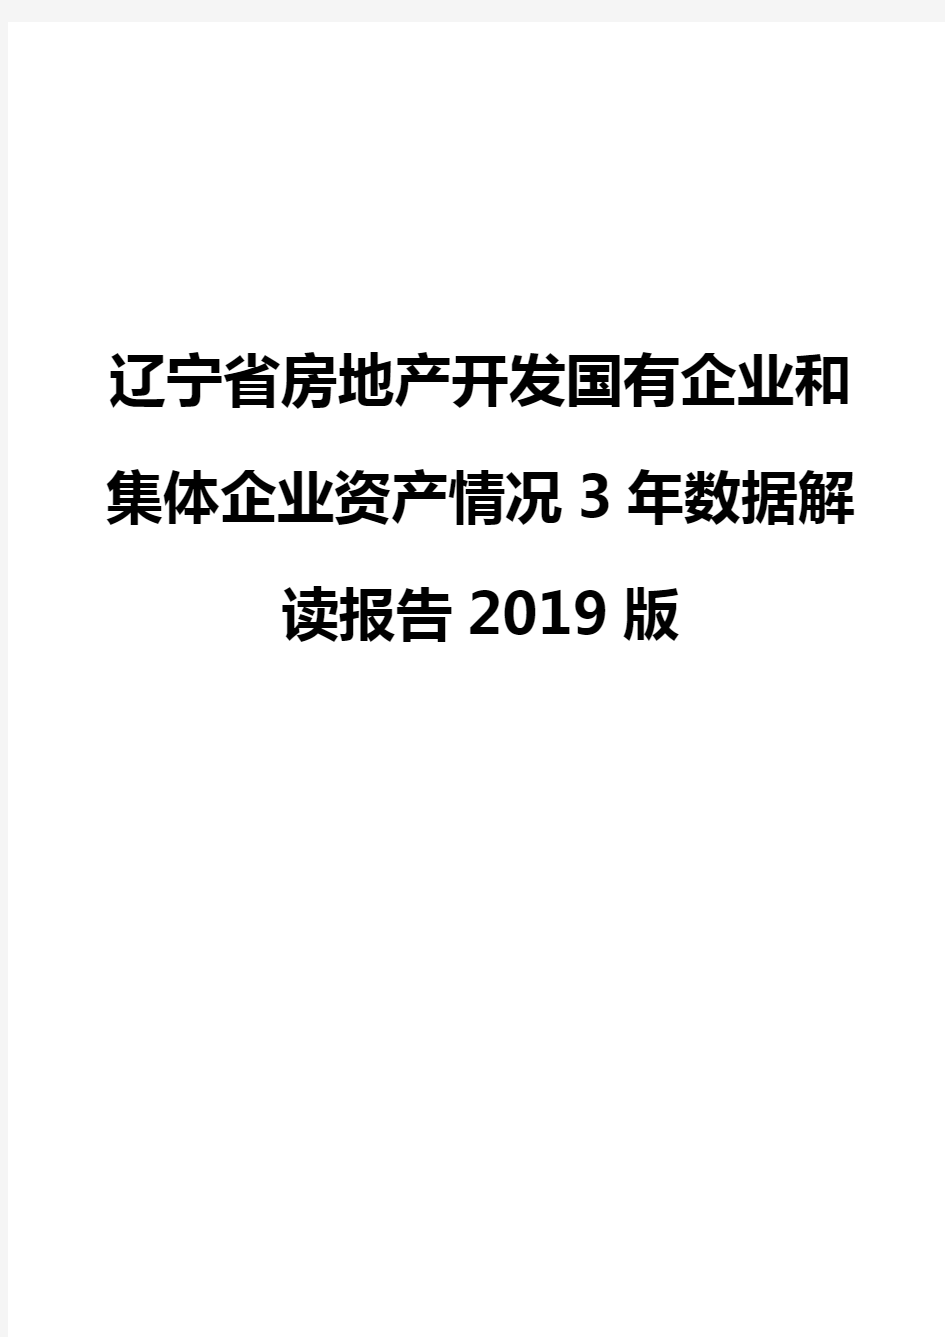 辽宁省房地产开发国有企业和集体企业资产情况3年数据解读报告2019版